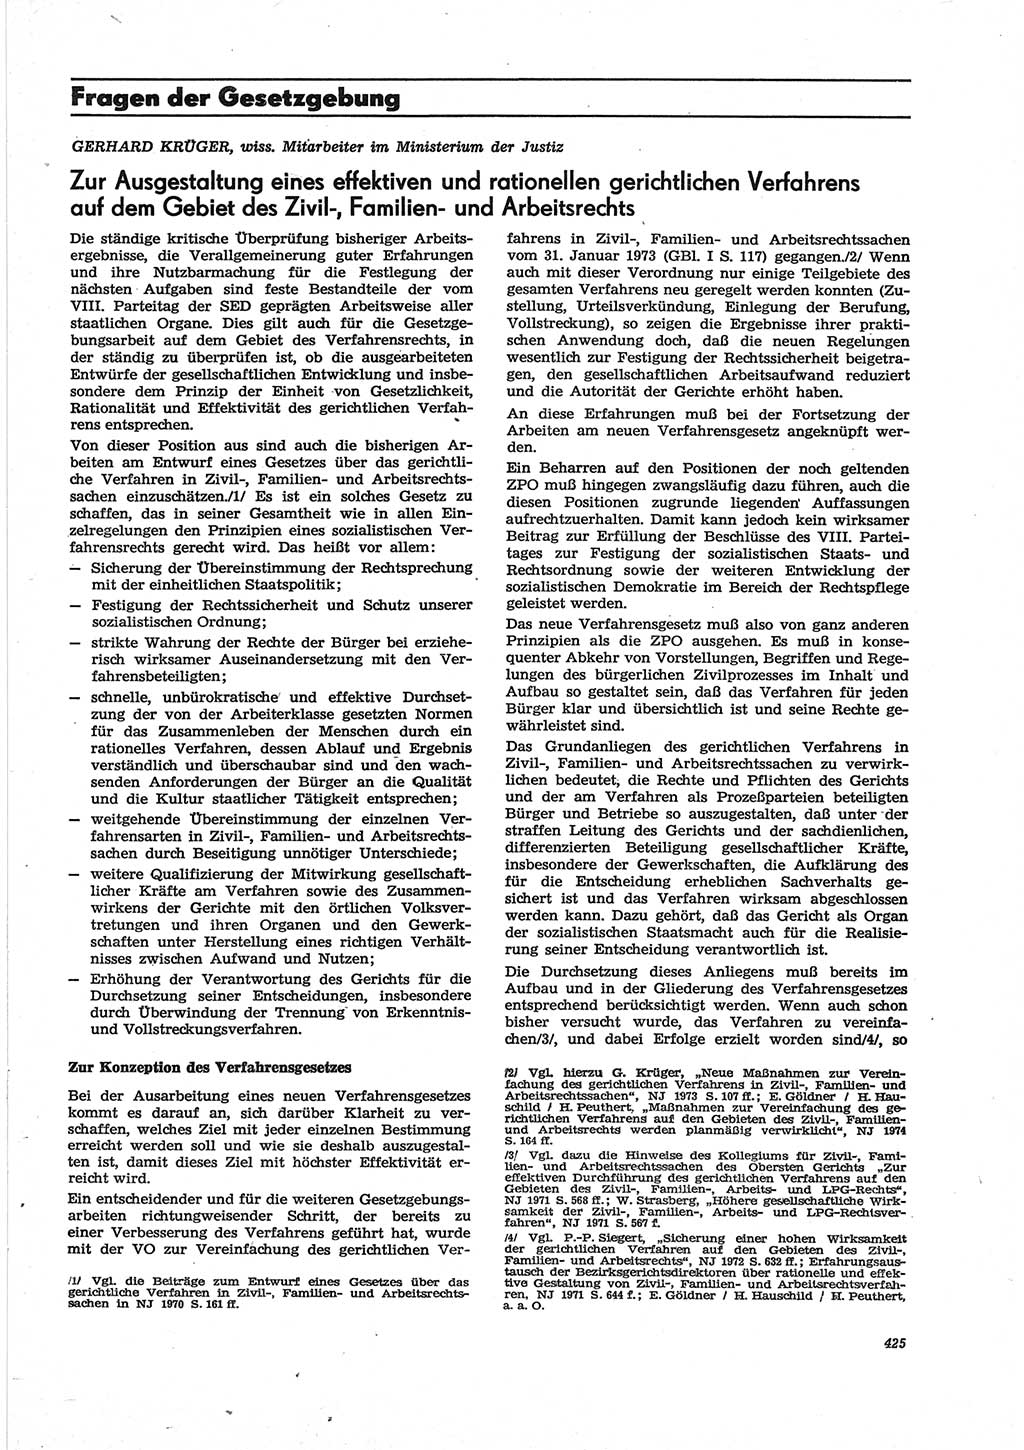 Neue Justiz (NJ), Zeitschrift für Recht und Rechtswissenschaft [Deutsche Demokratische Republik (DDR)], 28. Jahrgang 1974, Seite 425 (NJ DDR 1974, S. 425)